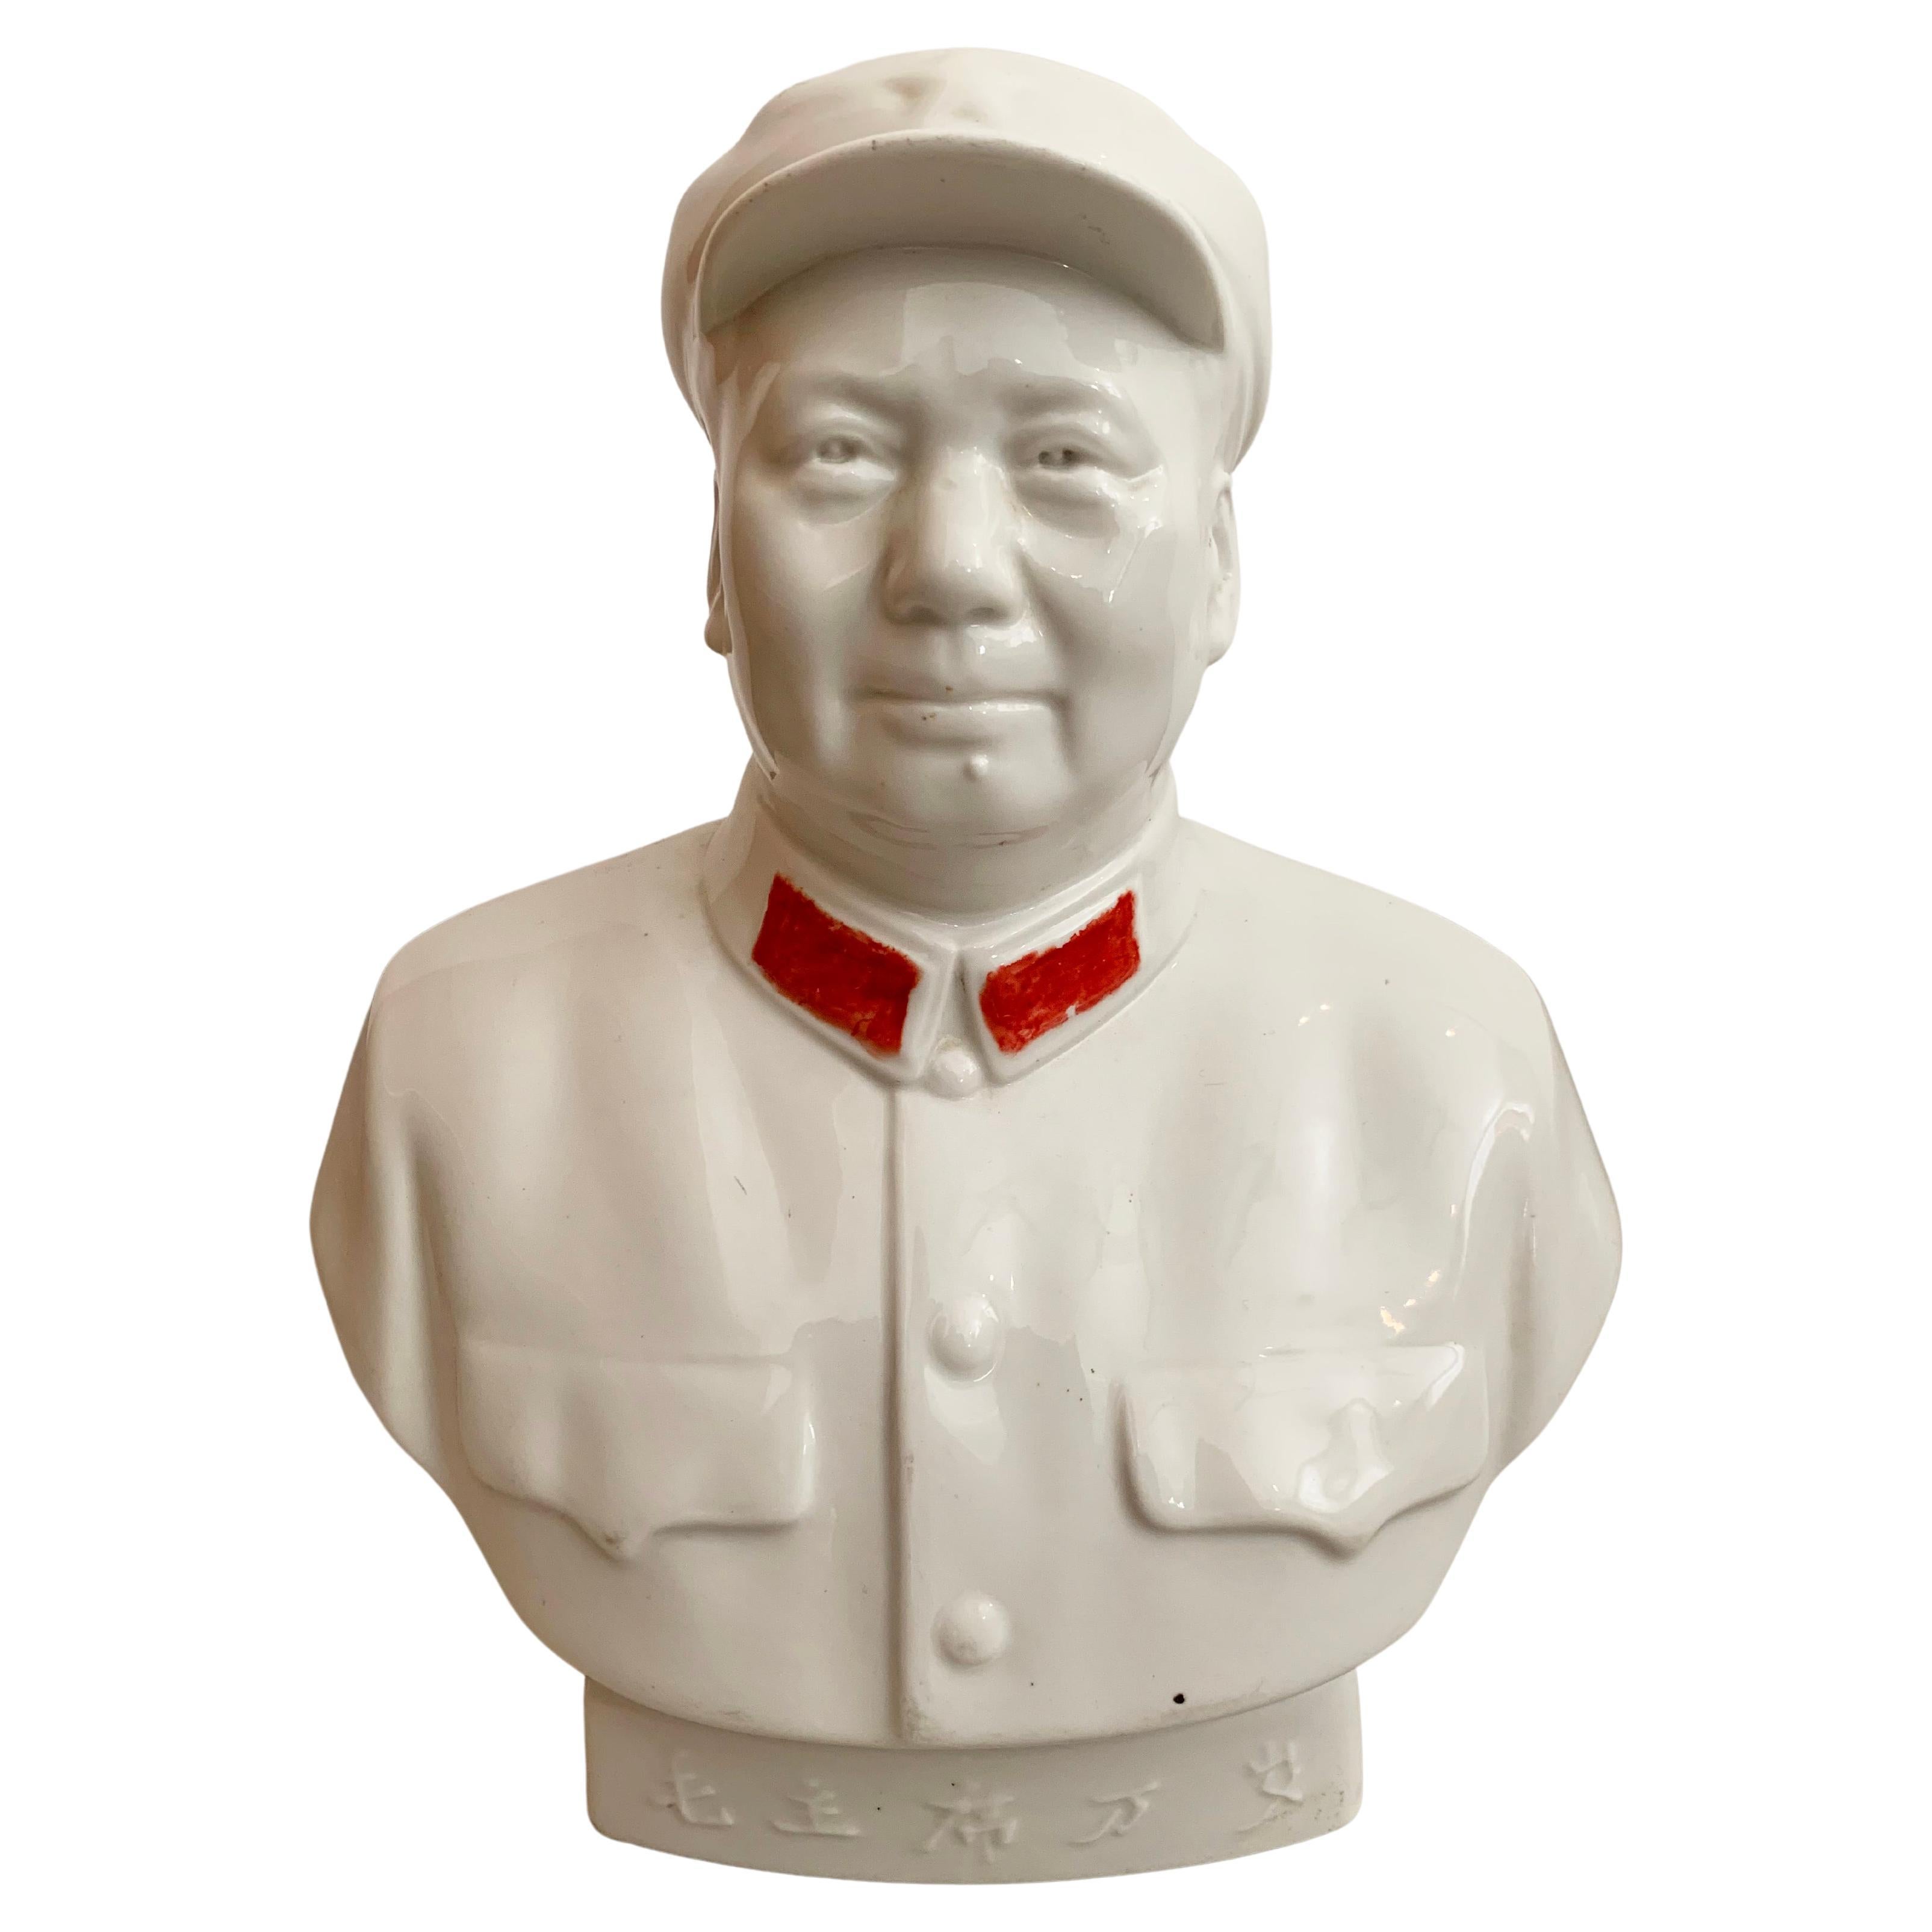 Chairman Mao Cultural Revolution Porcelain Figure, c. 1950